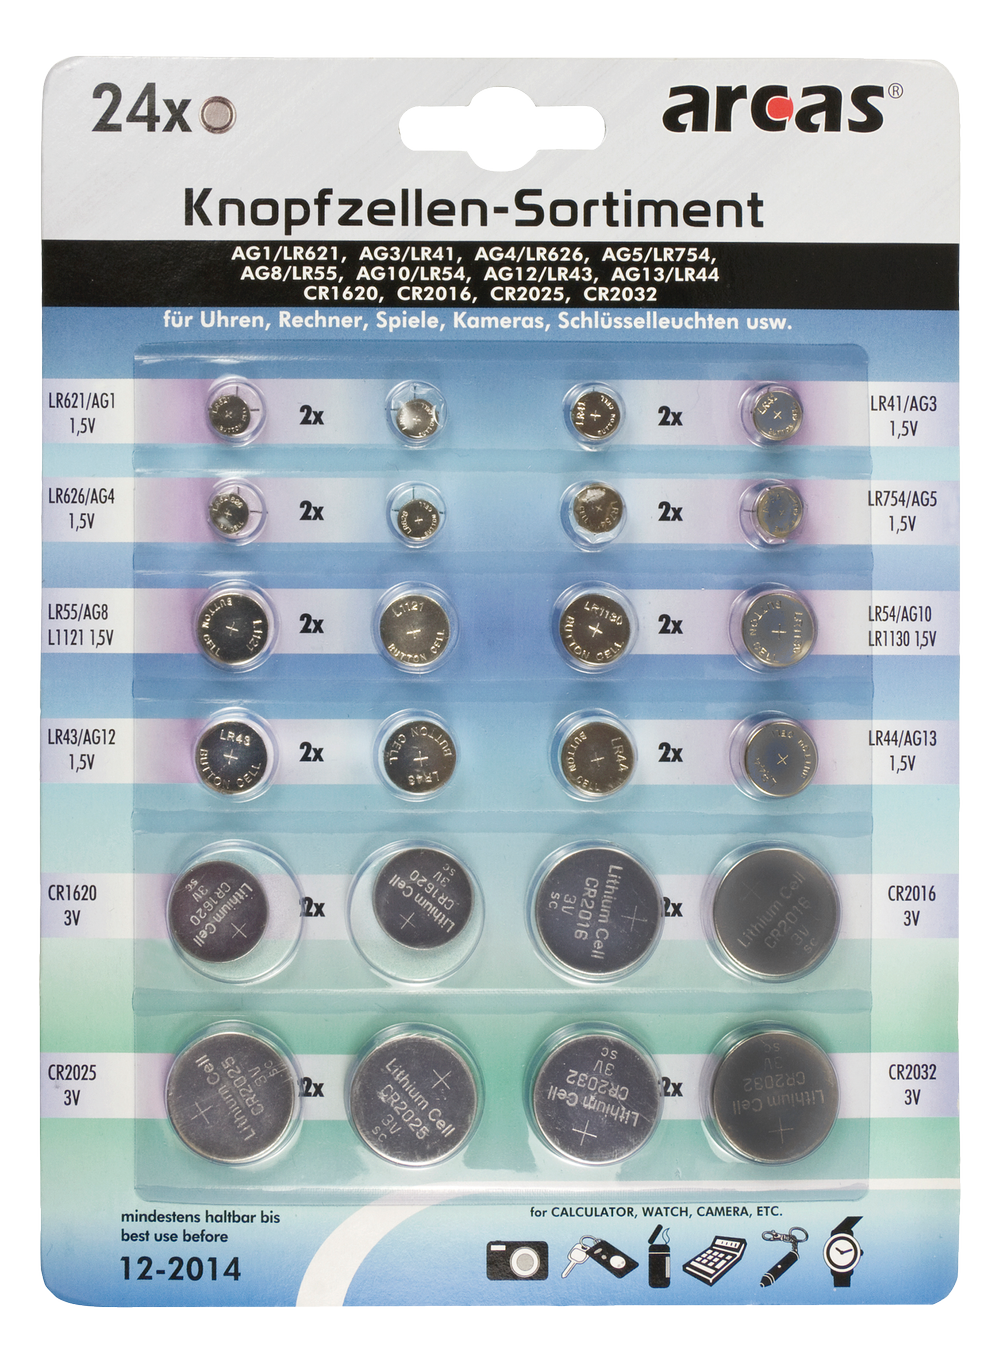 Knoopcellen set, alkaline en lithium, 24 stuks, 2x (AG1, AG3, AG4, AG5, AG8, AG10, AG12, AG13, CR1620, CR2016, CR2025, CR2032)